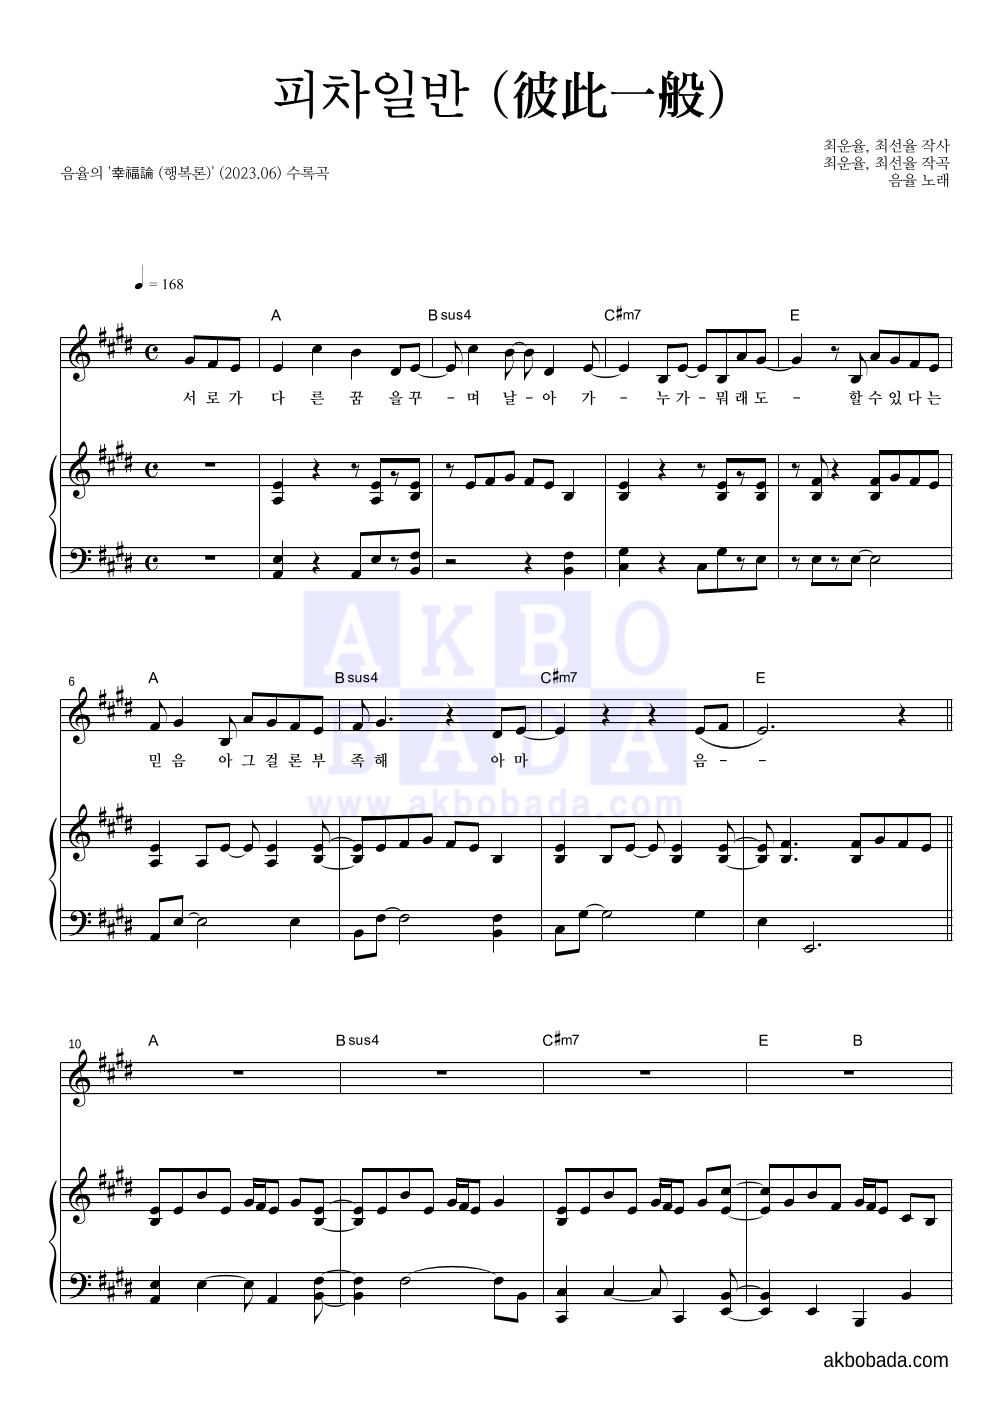 음율 - 피차일반 (彼此一般) 피아노 3단 악보 